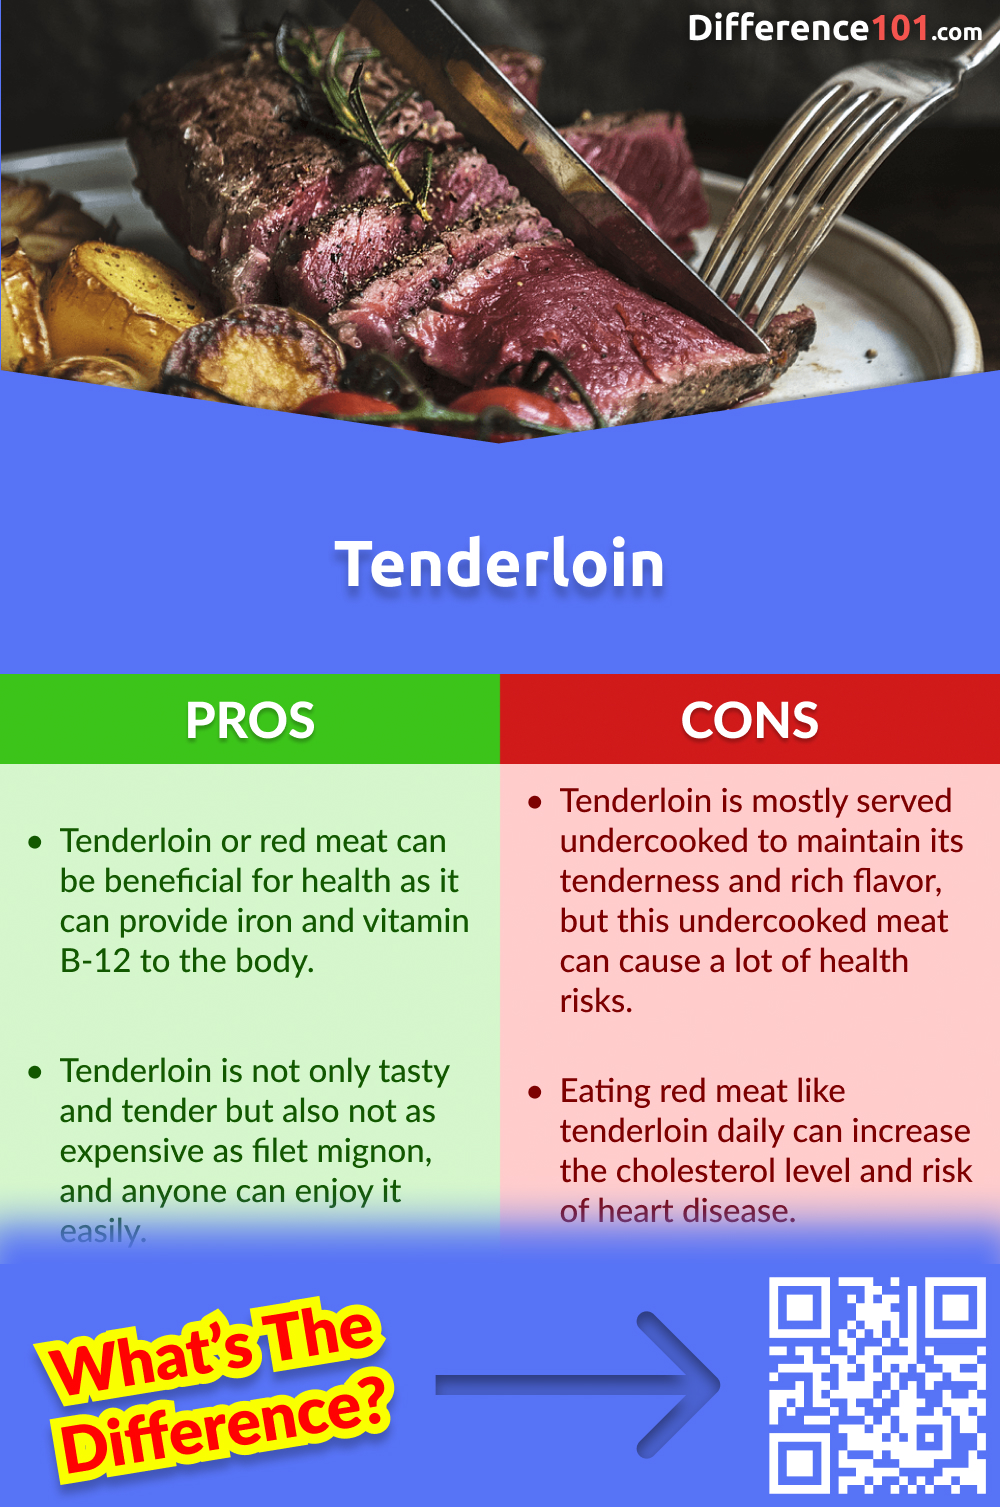 Tenderloin Pros and Cons